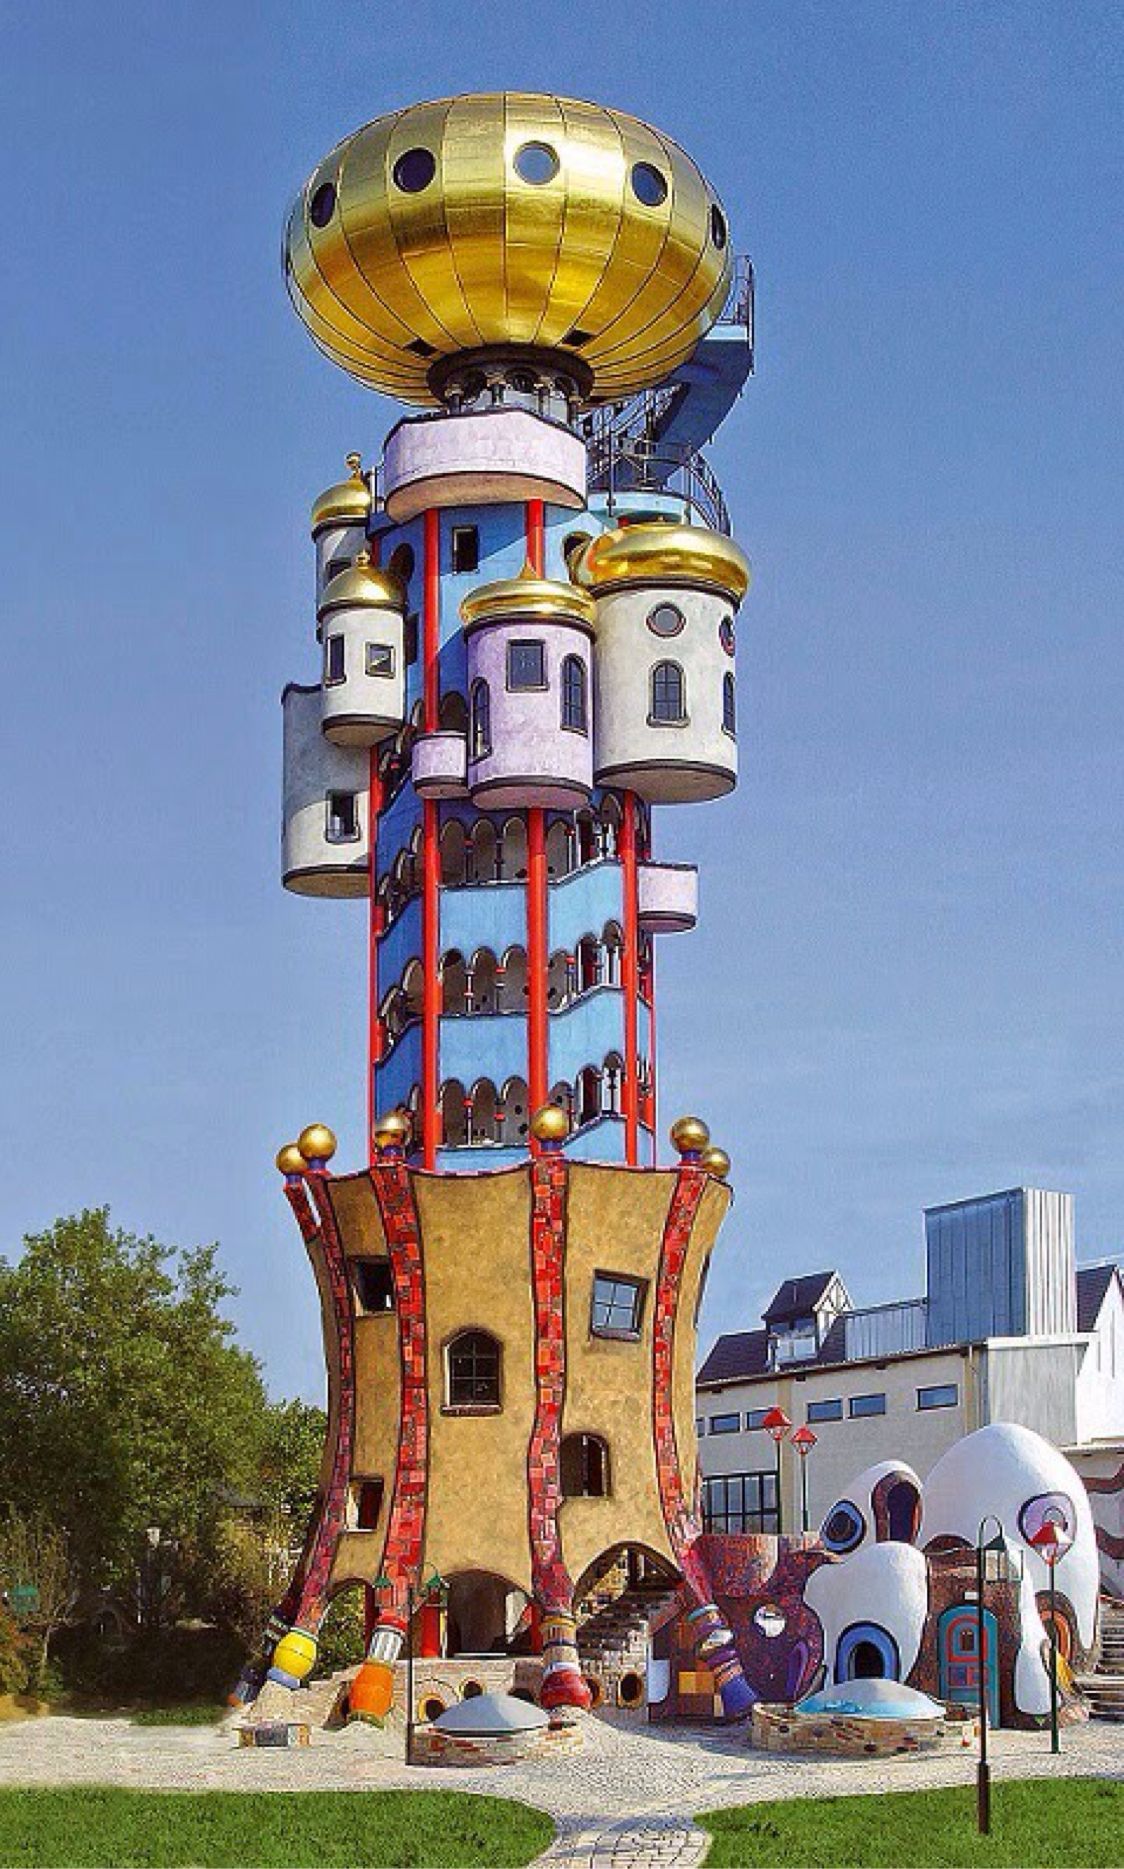 عکس هایی از برج برج کاچباور Kuchlbauer در آلمان